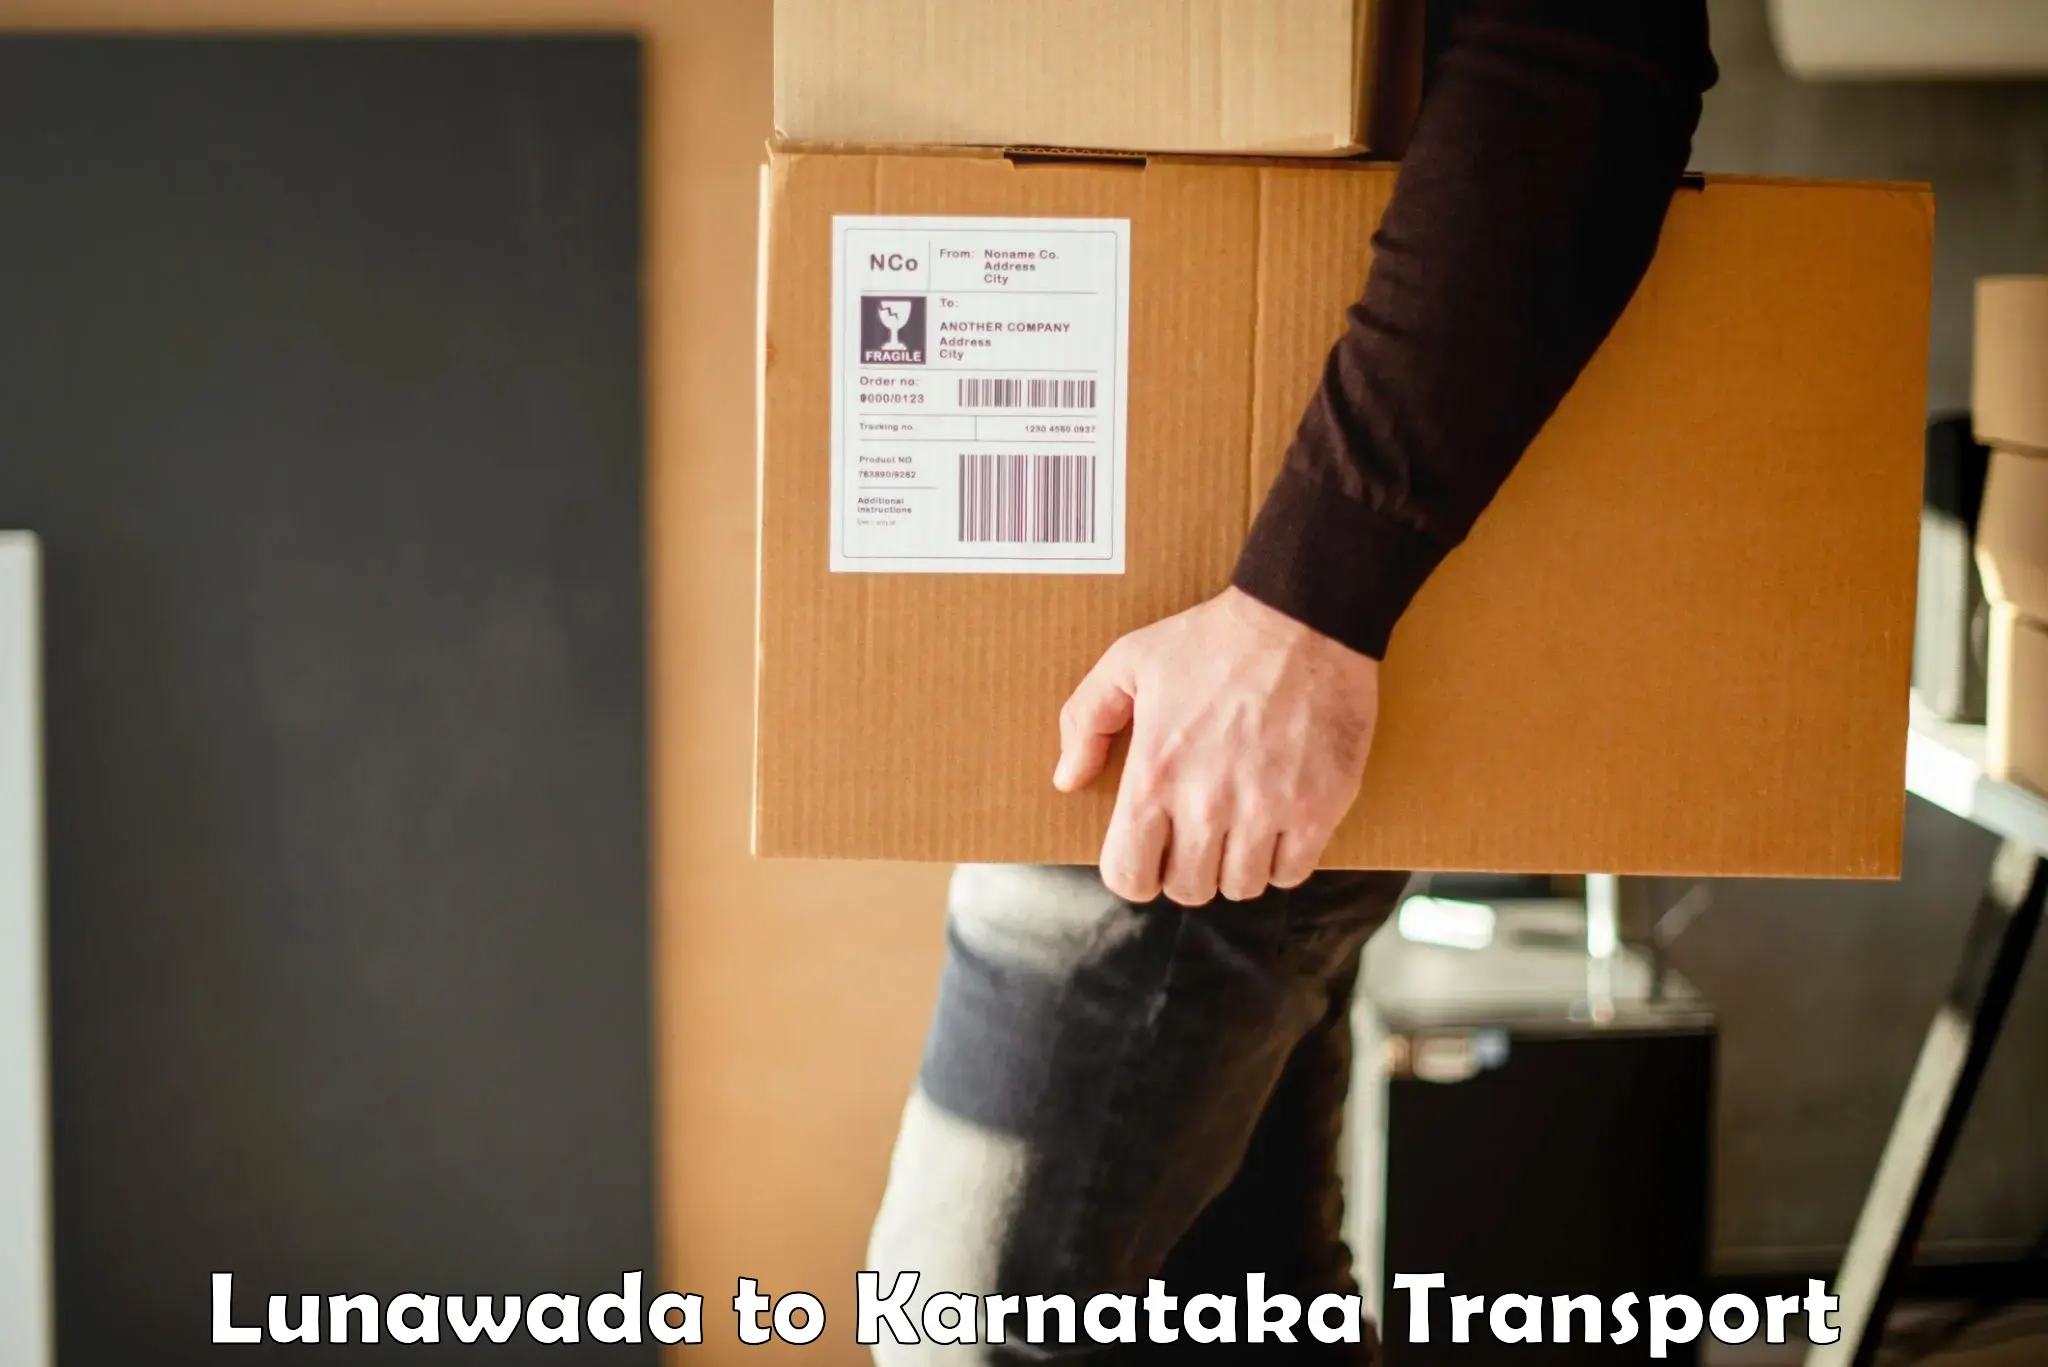 Online transport service Lunawada to Thirthahalli